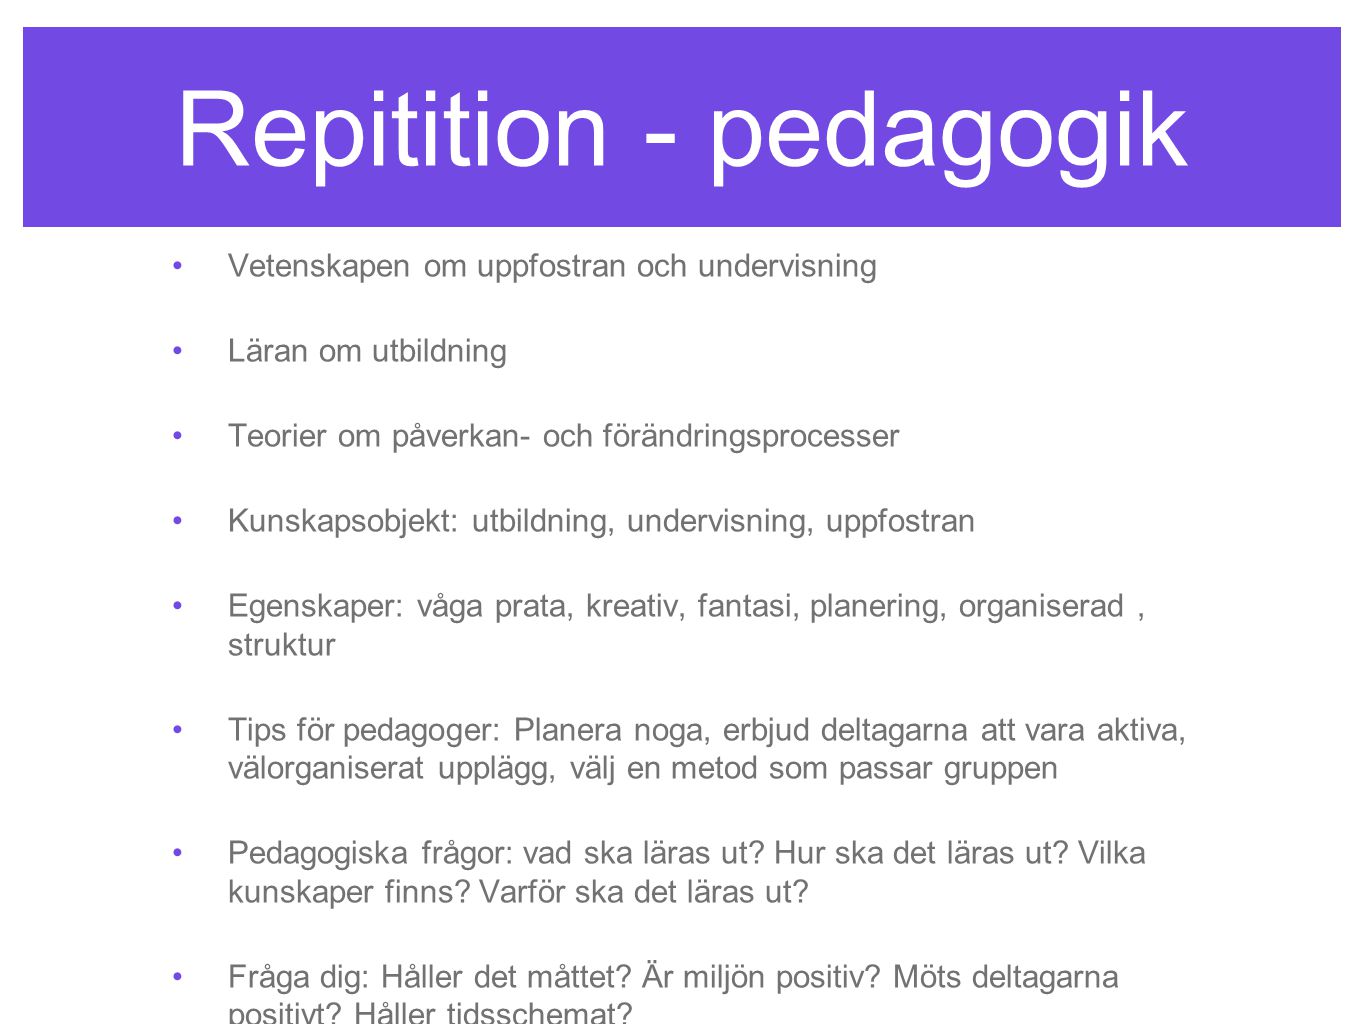 Repitition - pedagogik